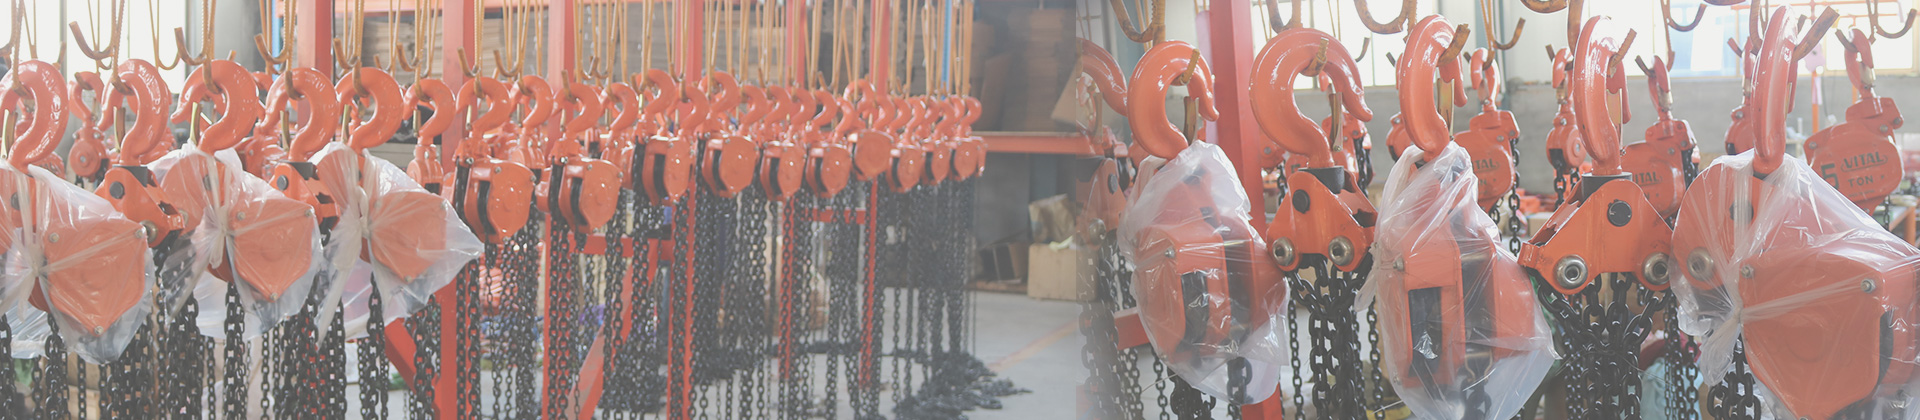 冠航機械造船廠螺旋槳安裝使用手動倒鏈起吊組裝原創文章